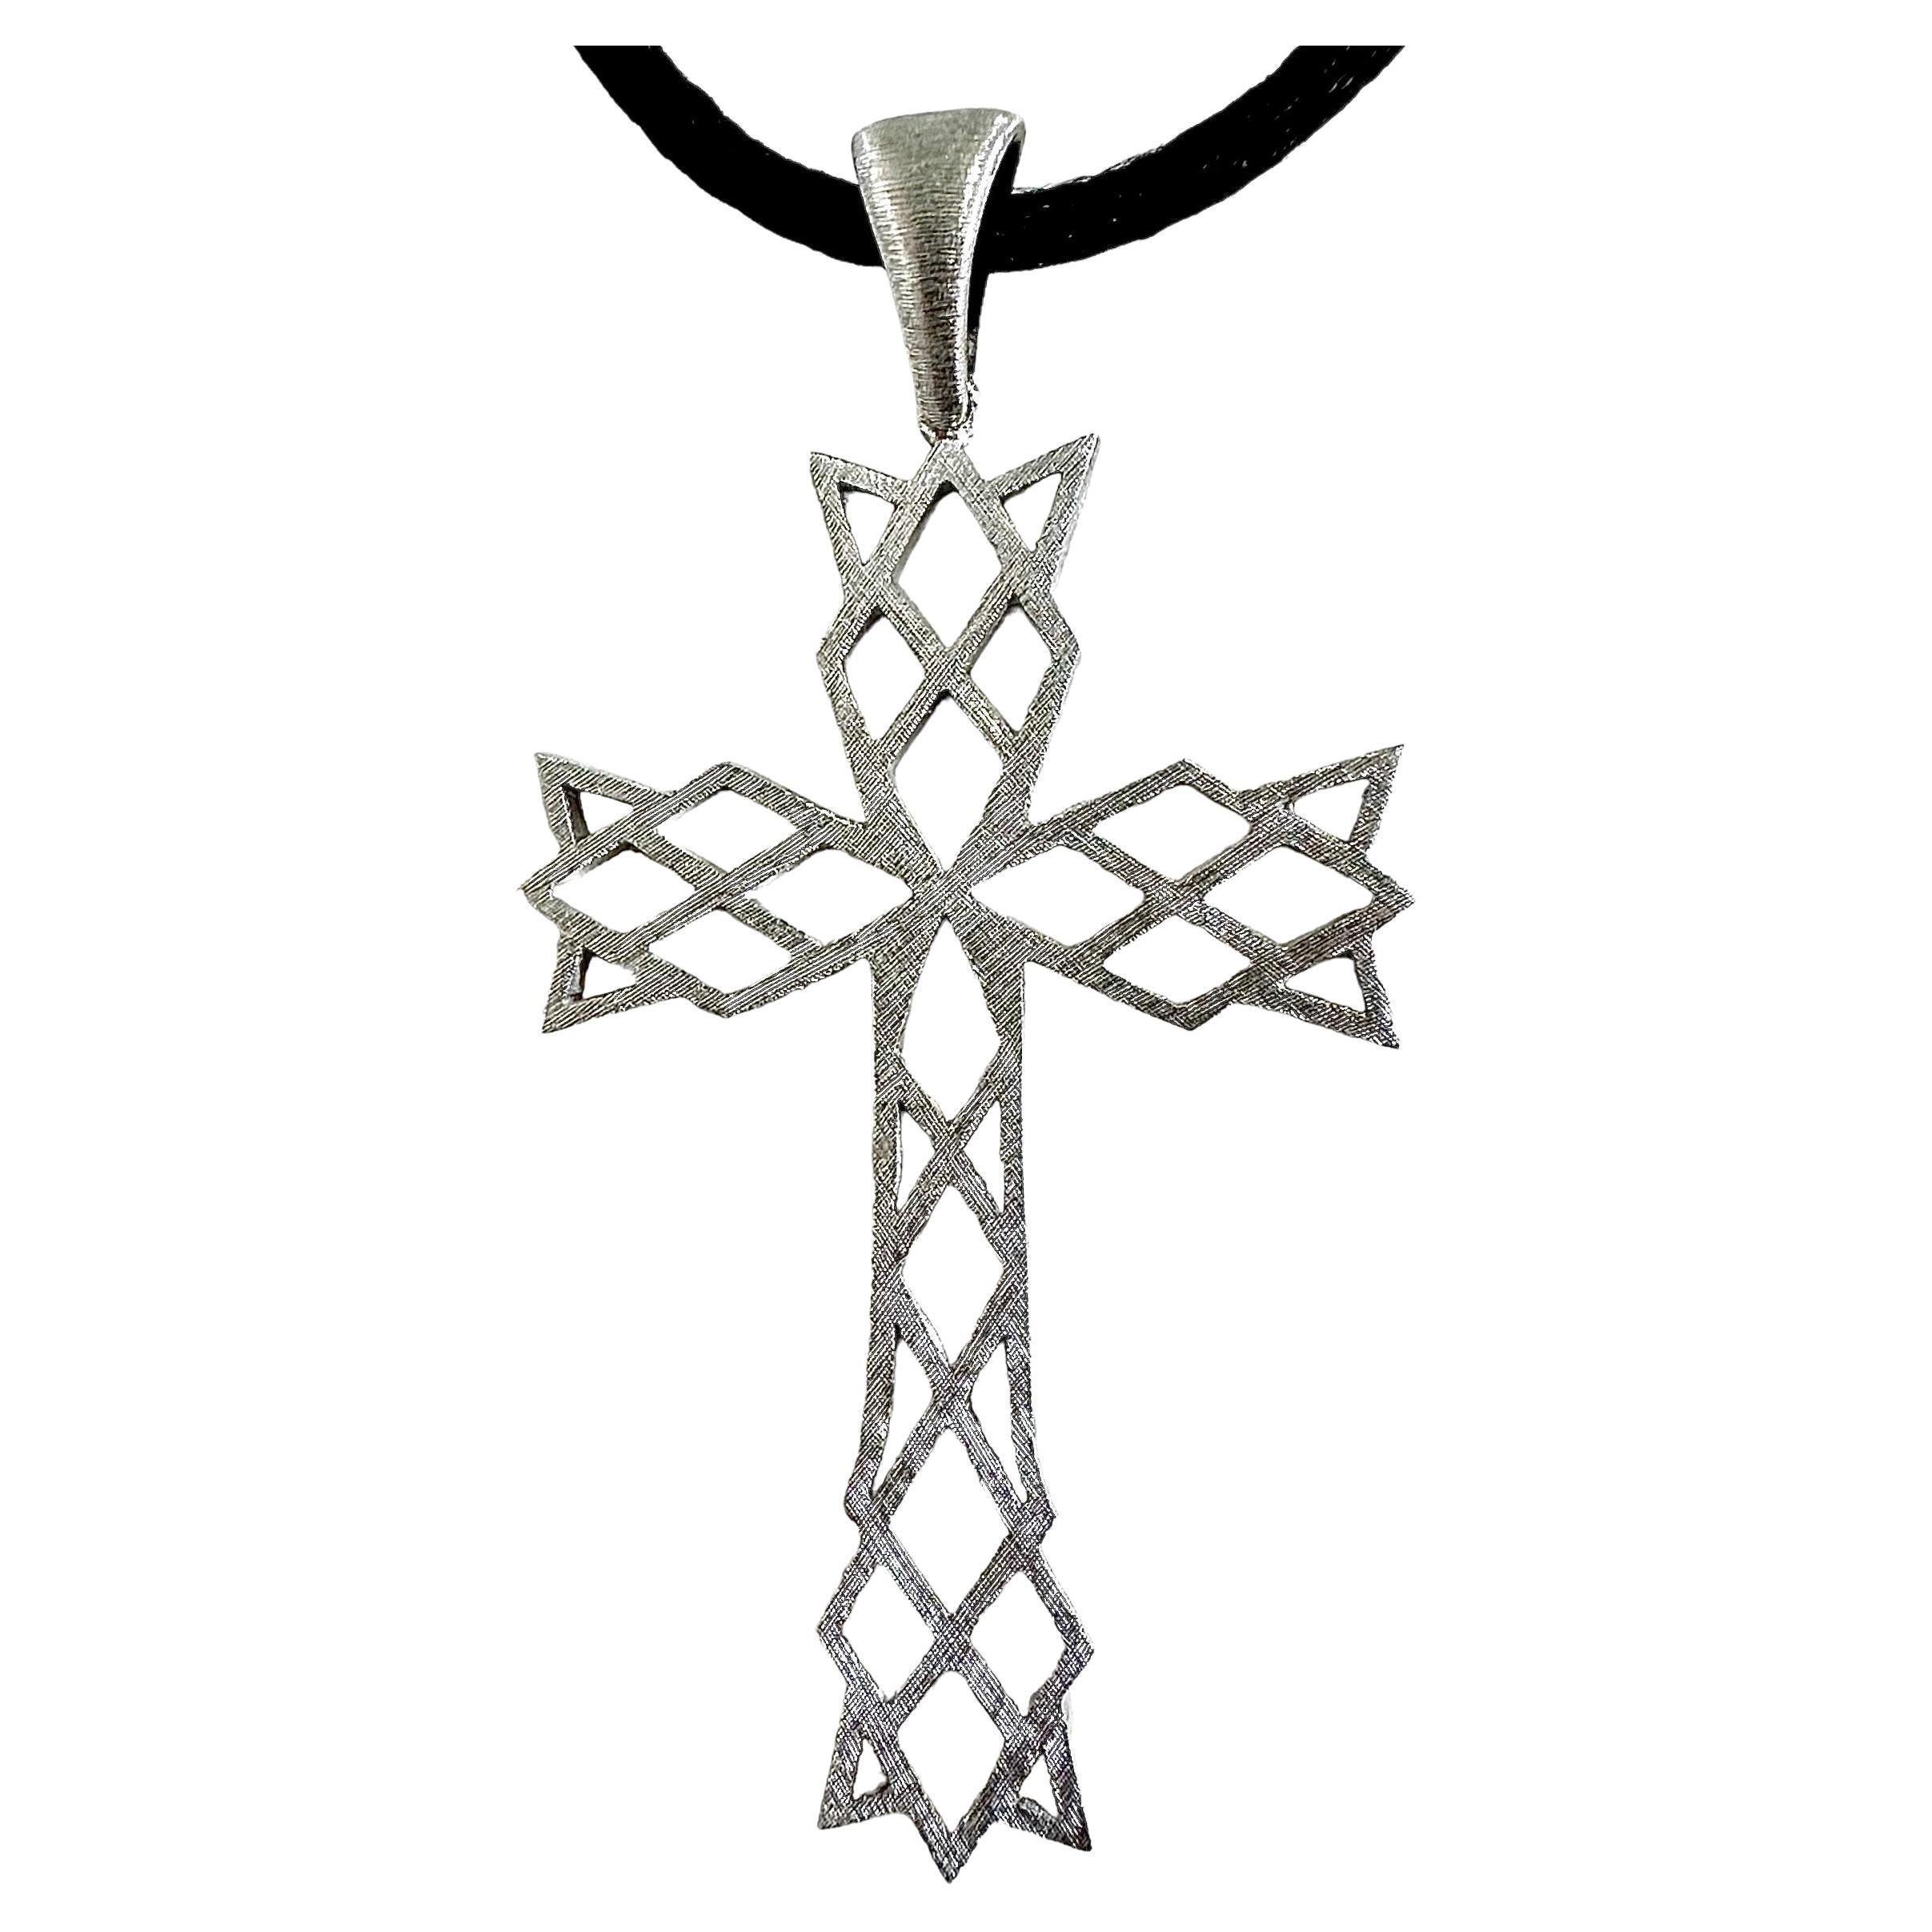 Cette croix vintage très unique et architecturale de M. Bucellatti est réalisée en or blanc 18 carats et est suspendue par un joli cordon rond de 2 mm en satin noir, de la longueur d'un tour de cou. L'embout du cordon et le fermoir à mousqueton sont